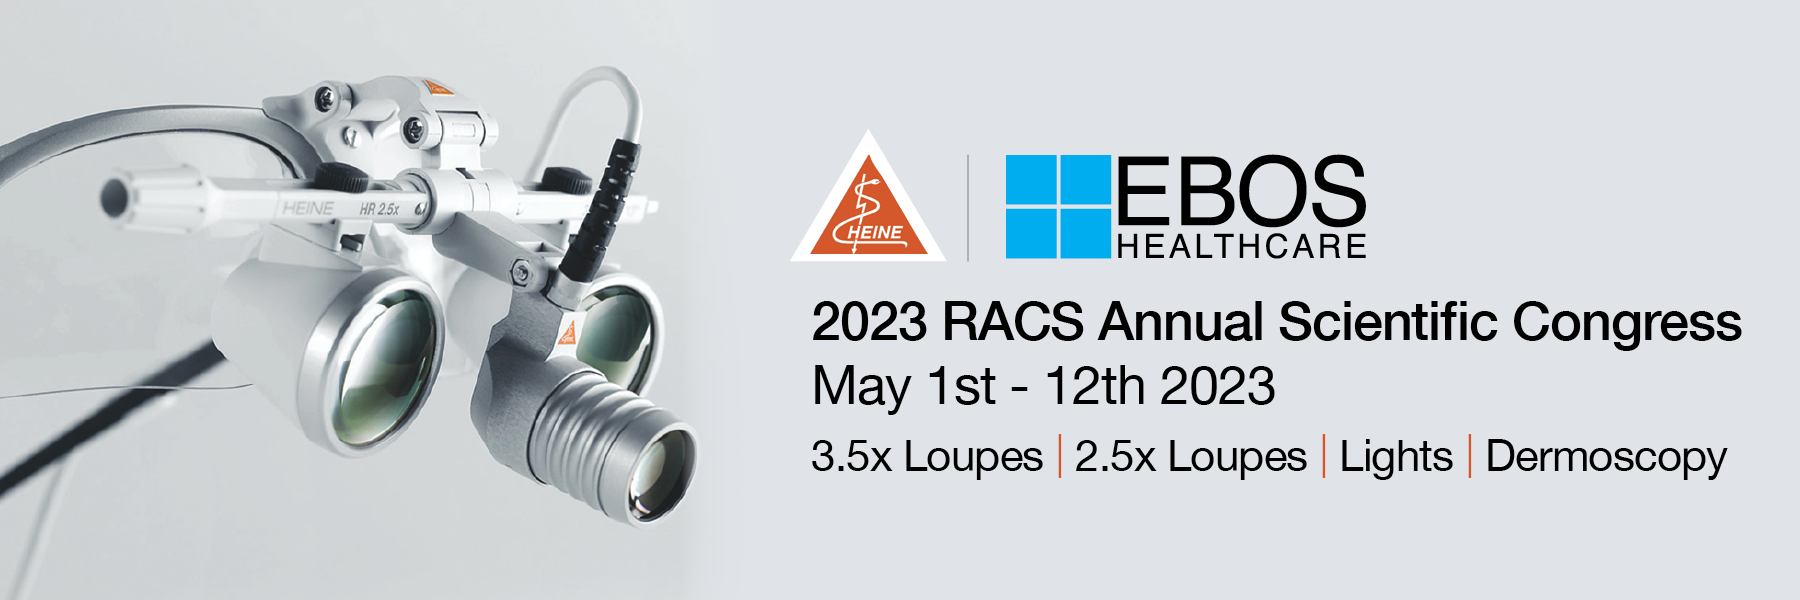 EHC AU Heine RACS web banner_April 2023.png